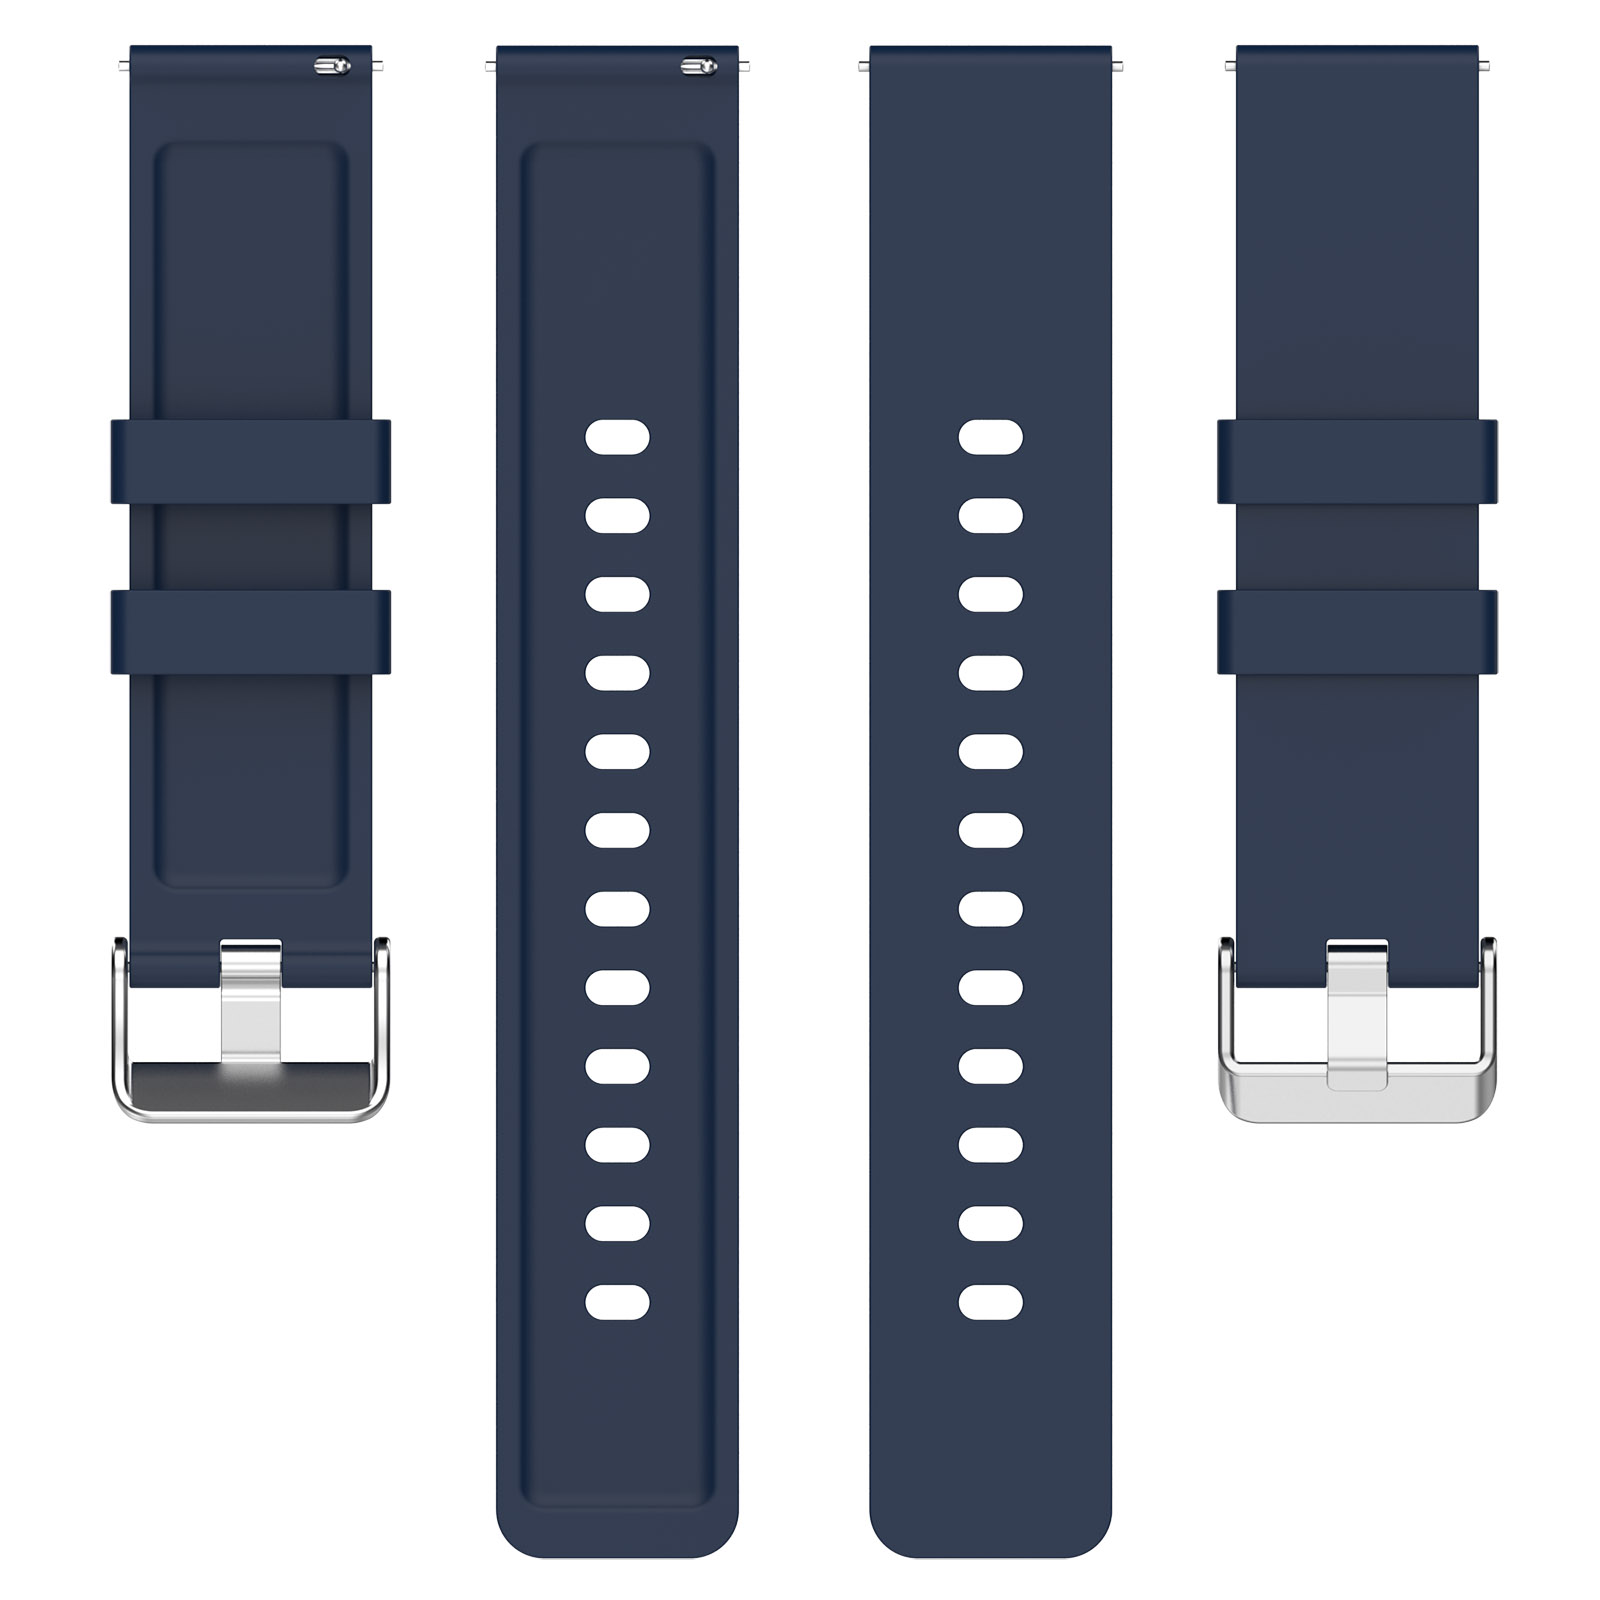 Watch, Armband Nord Silikon, Ersatzarmband, OnePlus, Dunkelblau INF